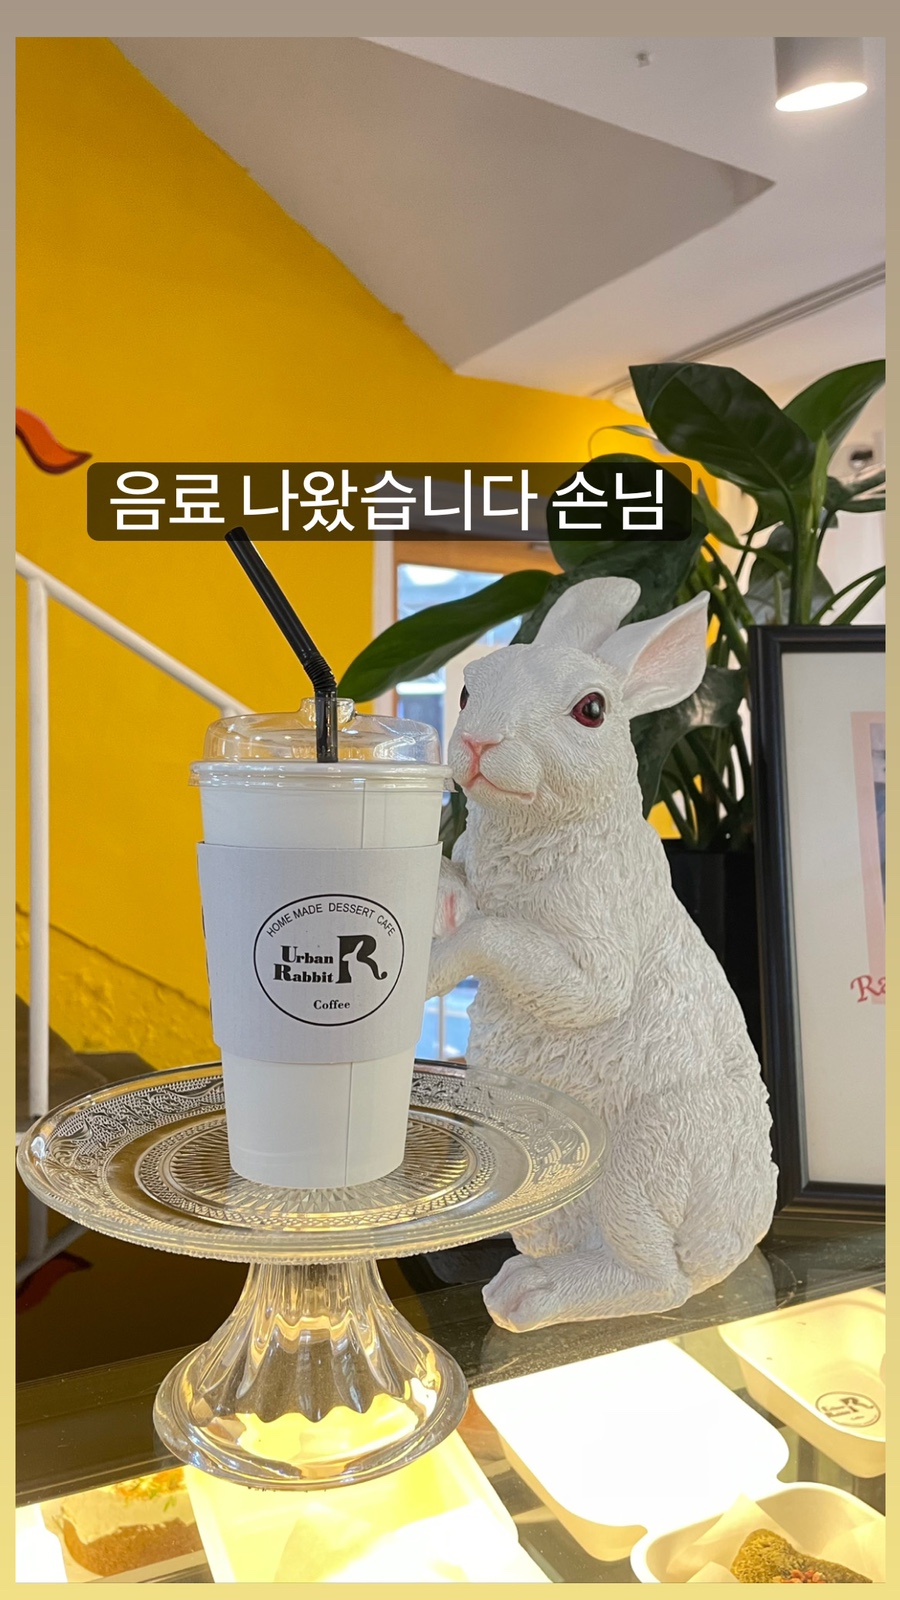 강남역 카페 “어반레빗” 귀여운 토끼와 디저트 행렬(스콘감동)